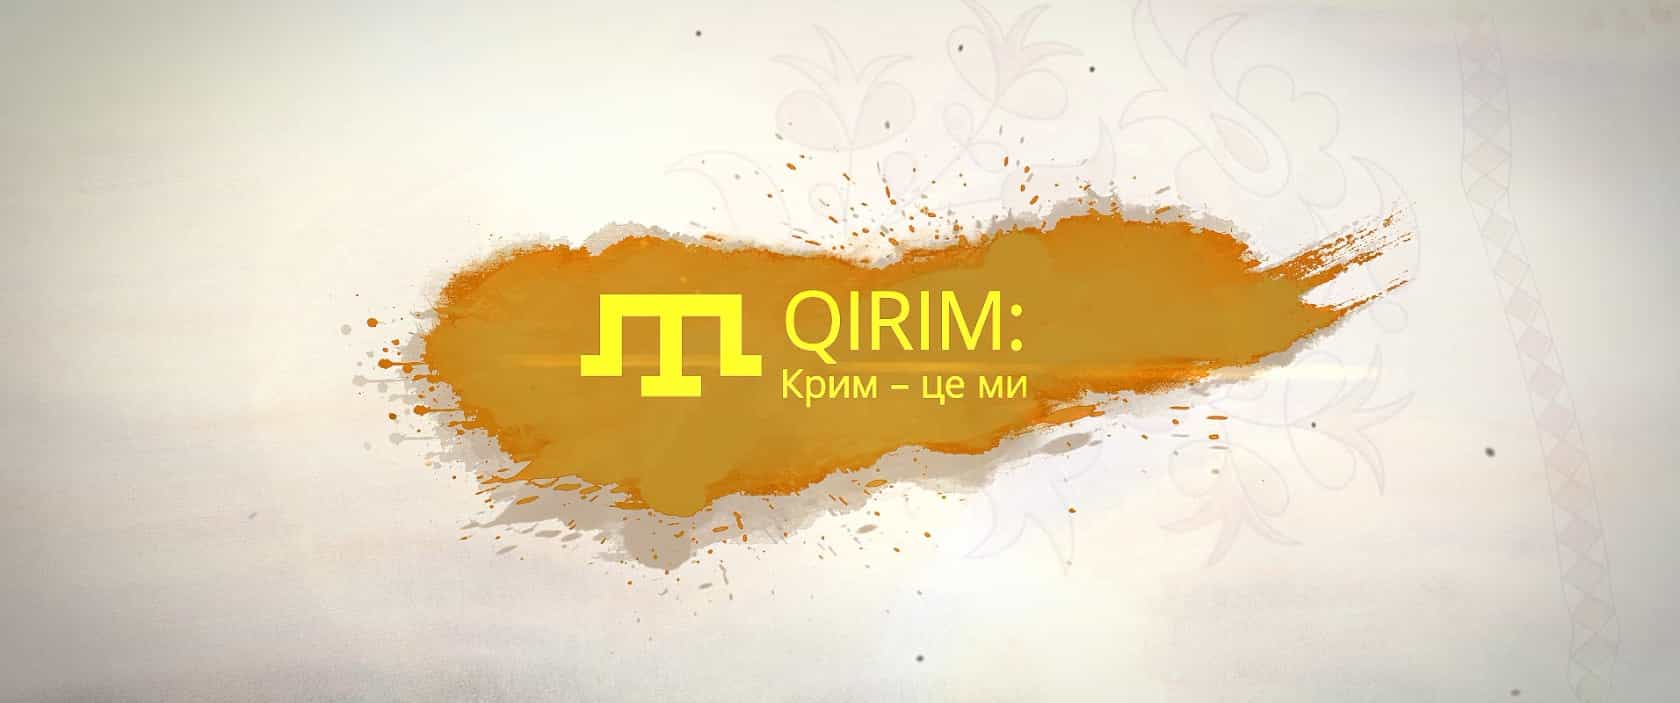 Кейс лекций" Qirim. Крым - это мы"